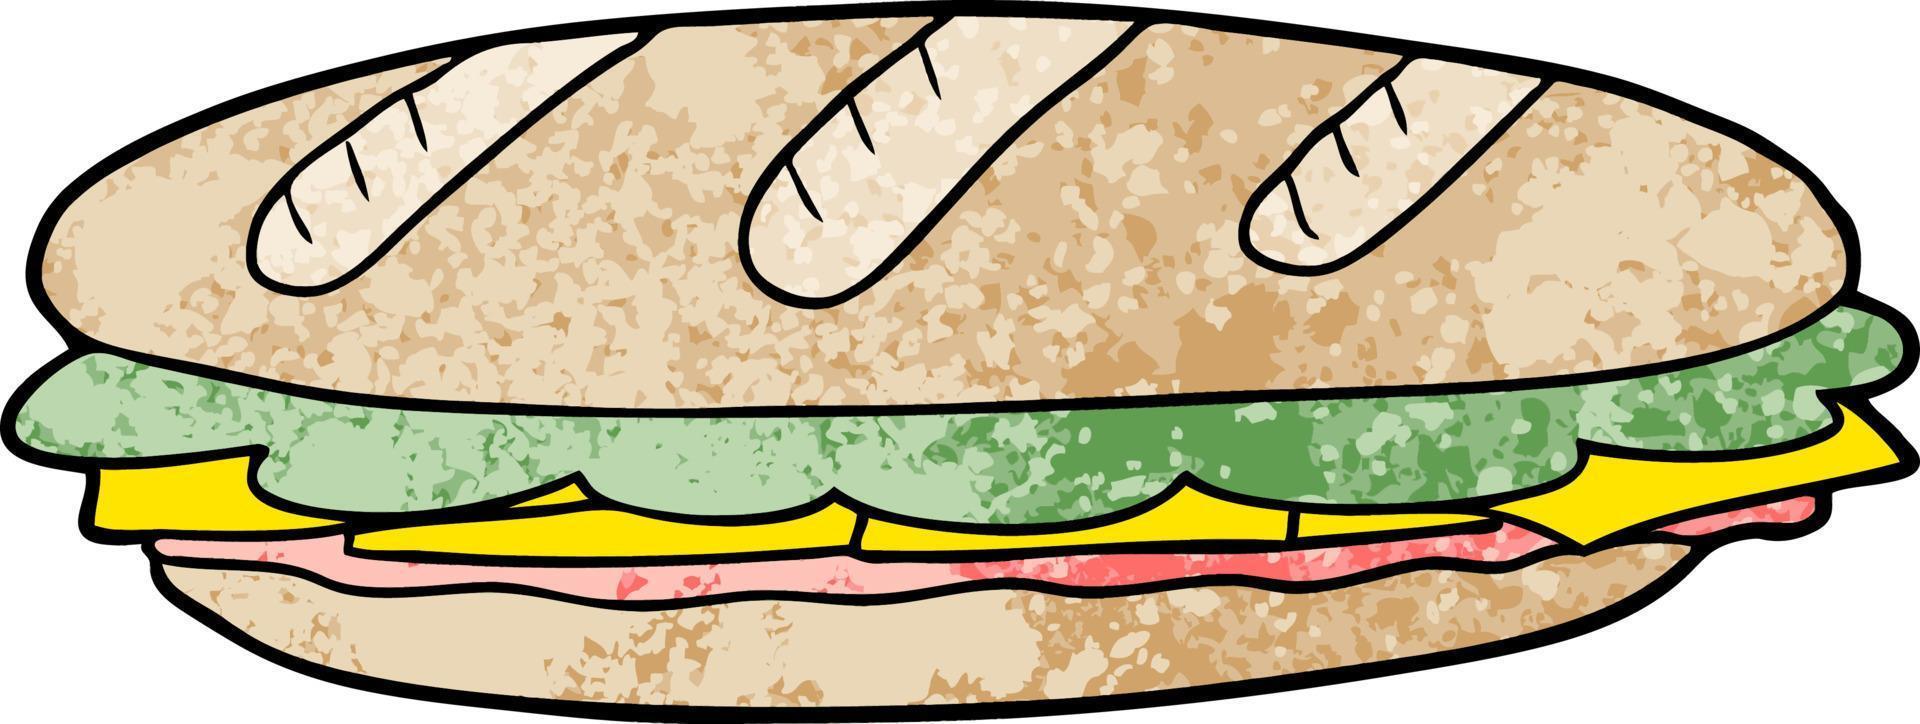 sandwich à la baguette de dessin animé vecteur